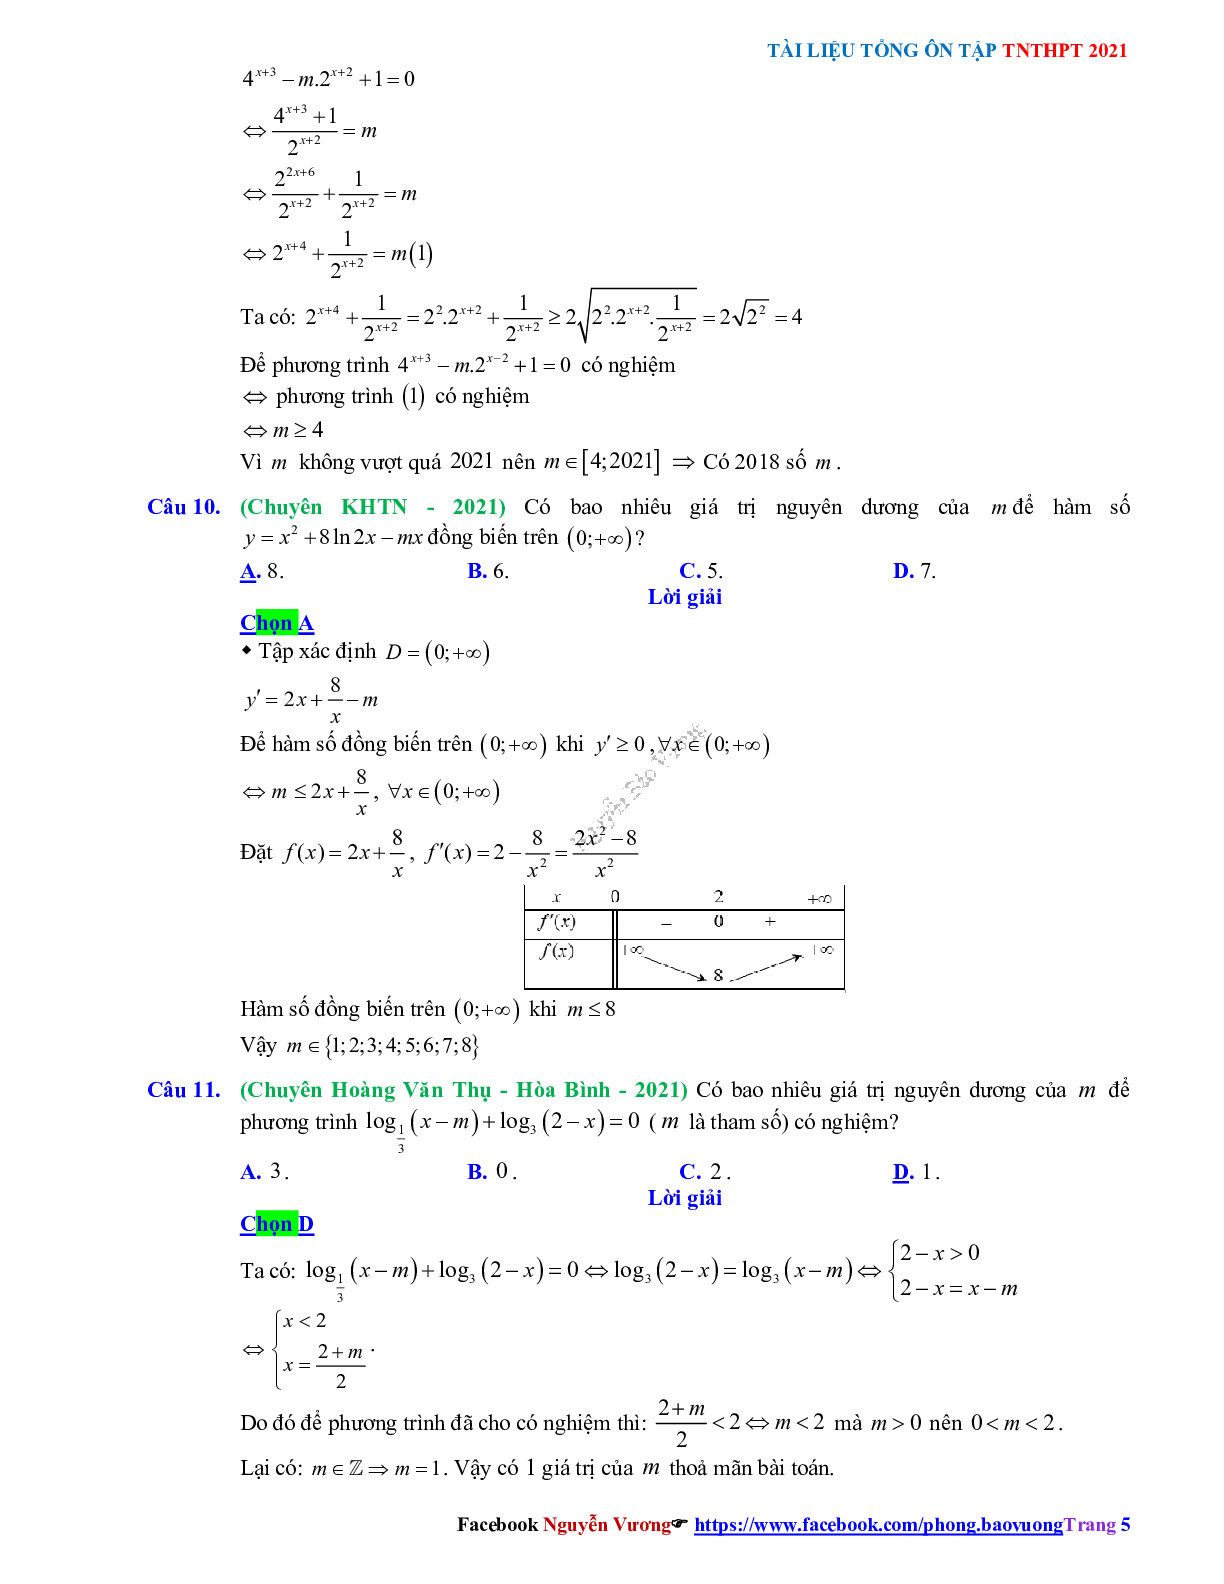 Trắc nghiệm Ôn thi THPT QG Toán 12: Đáp án mũ - lũy thừa - logarit mức độ vận dụng (trang 5)